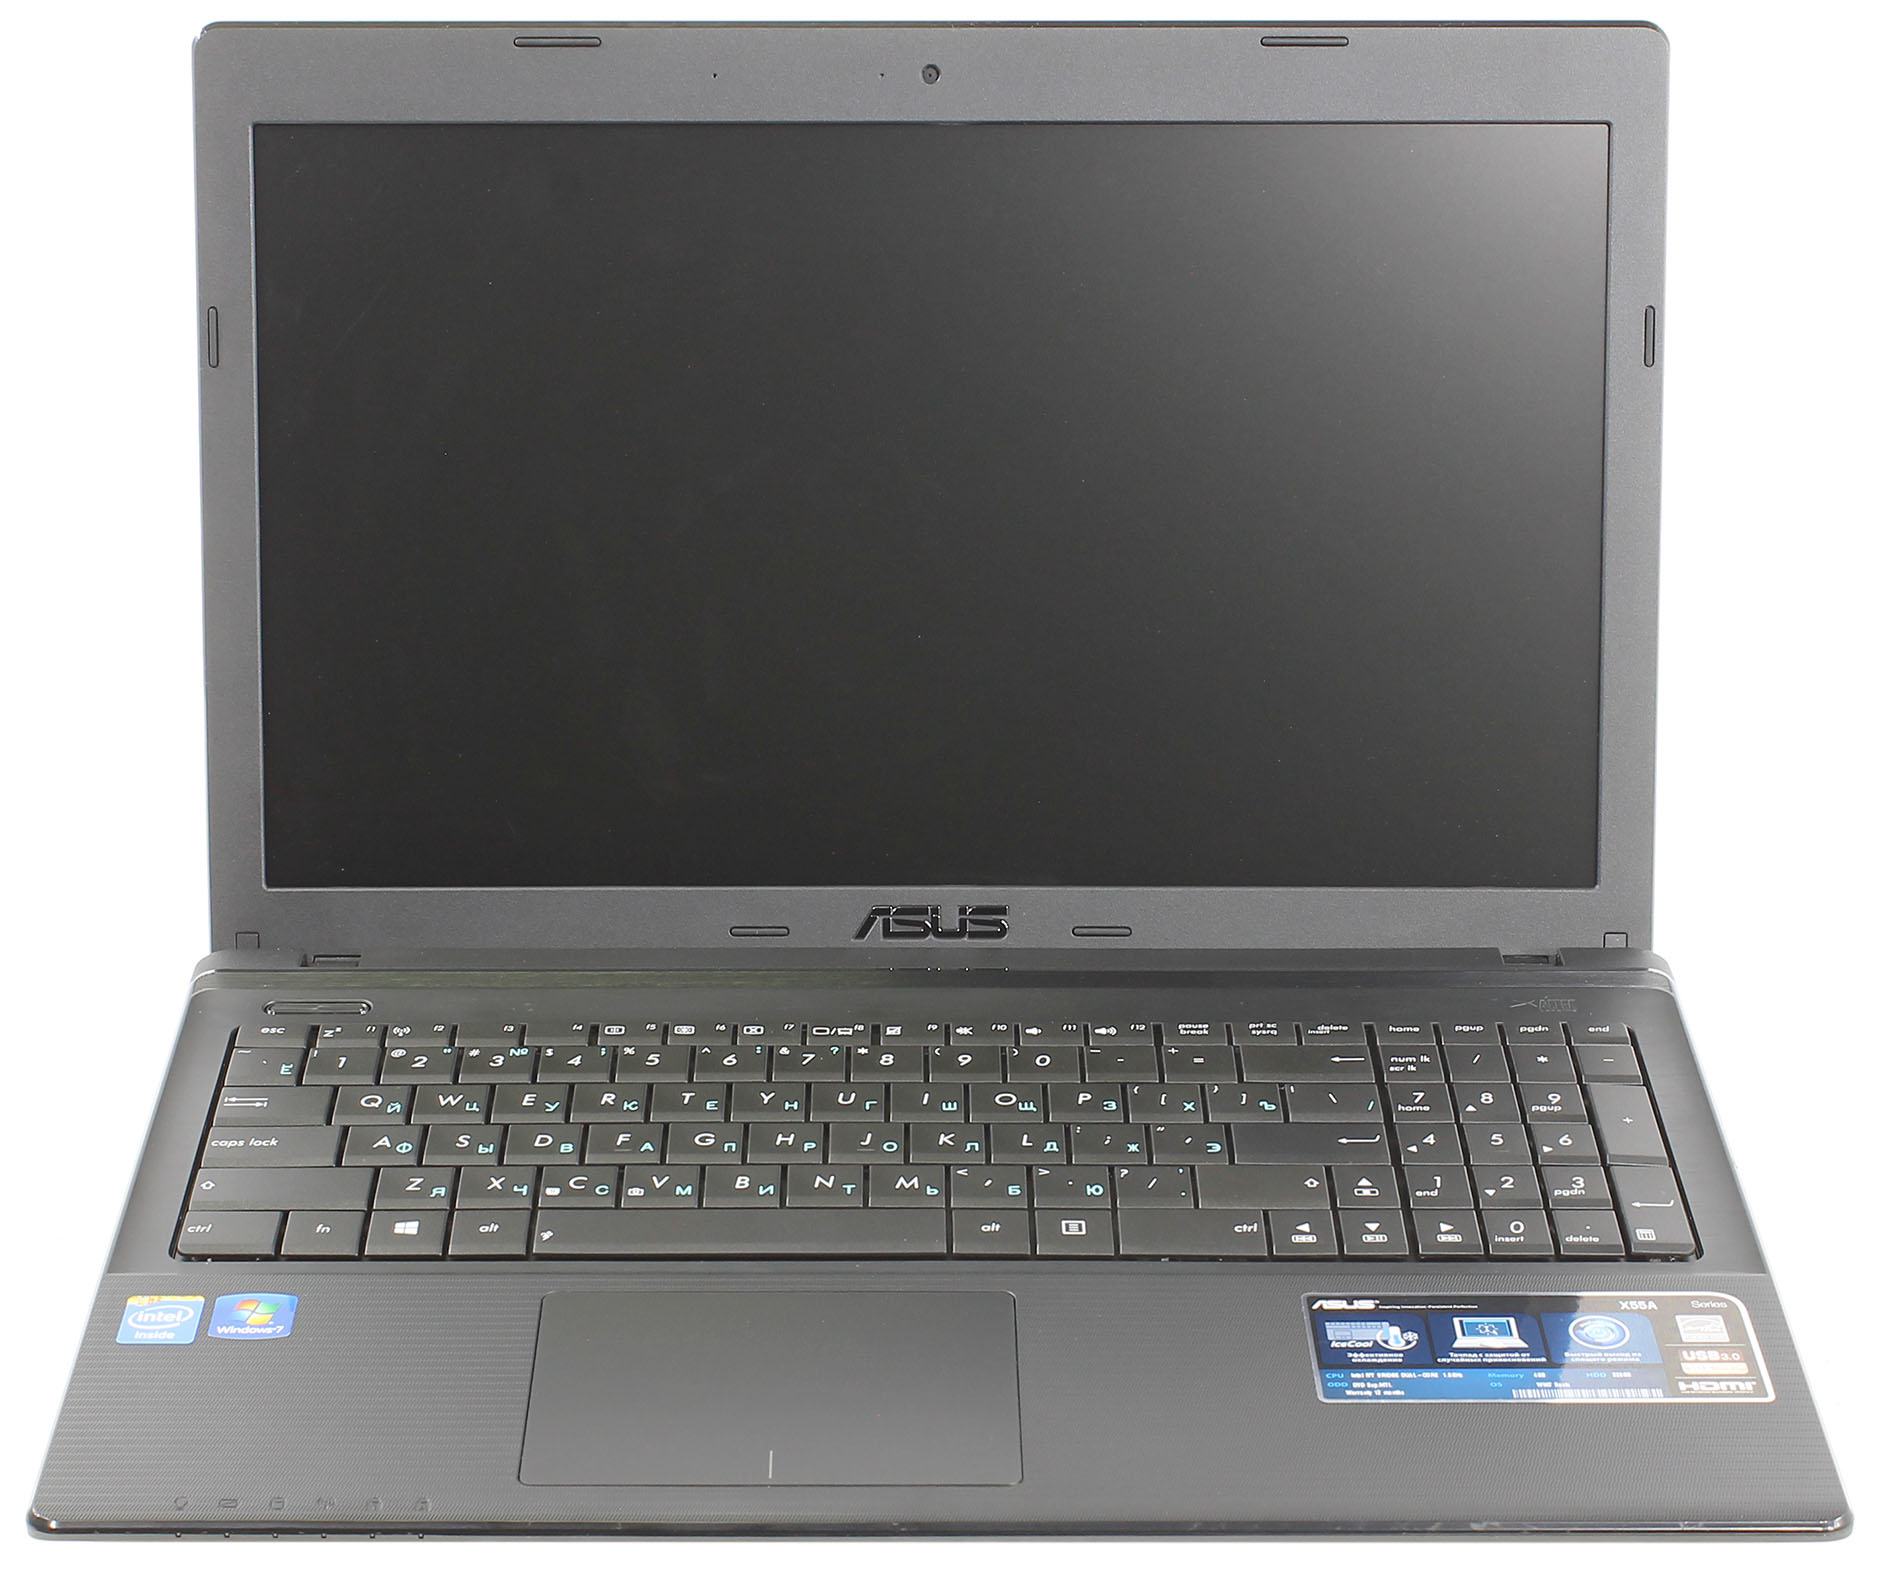 Ноутбук Asus X55a Характеристики Цена